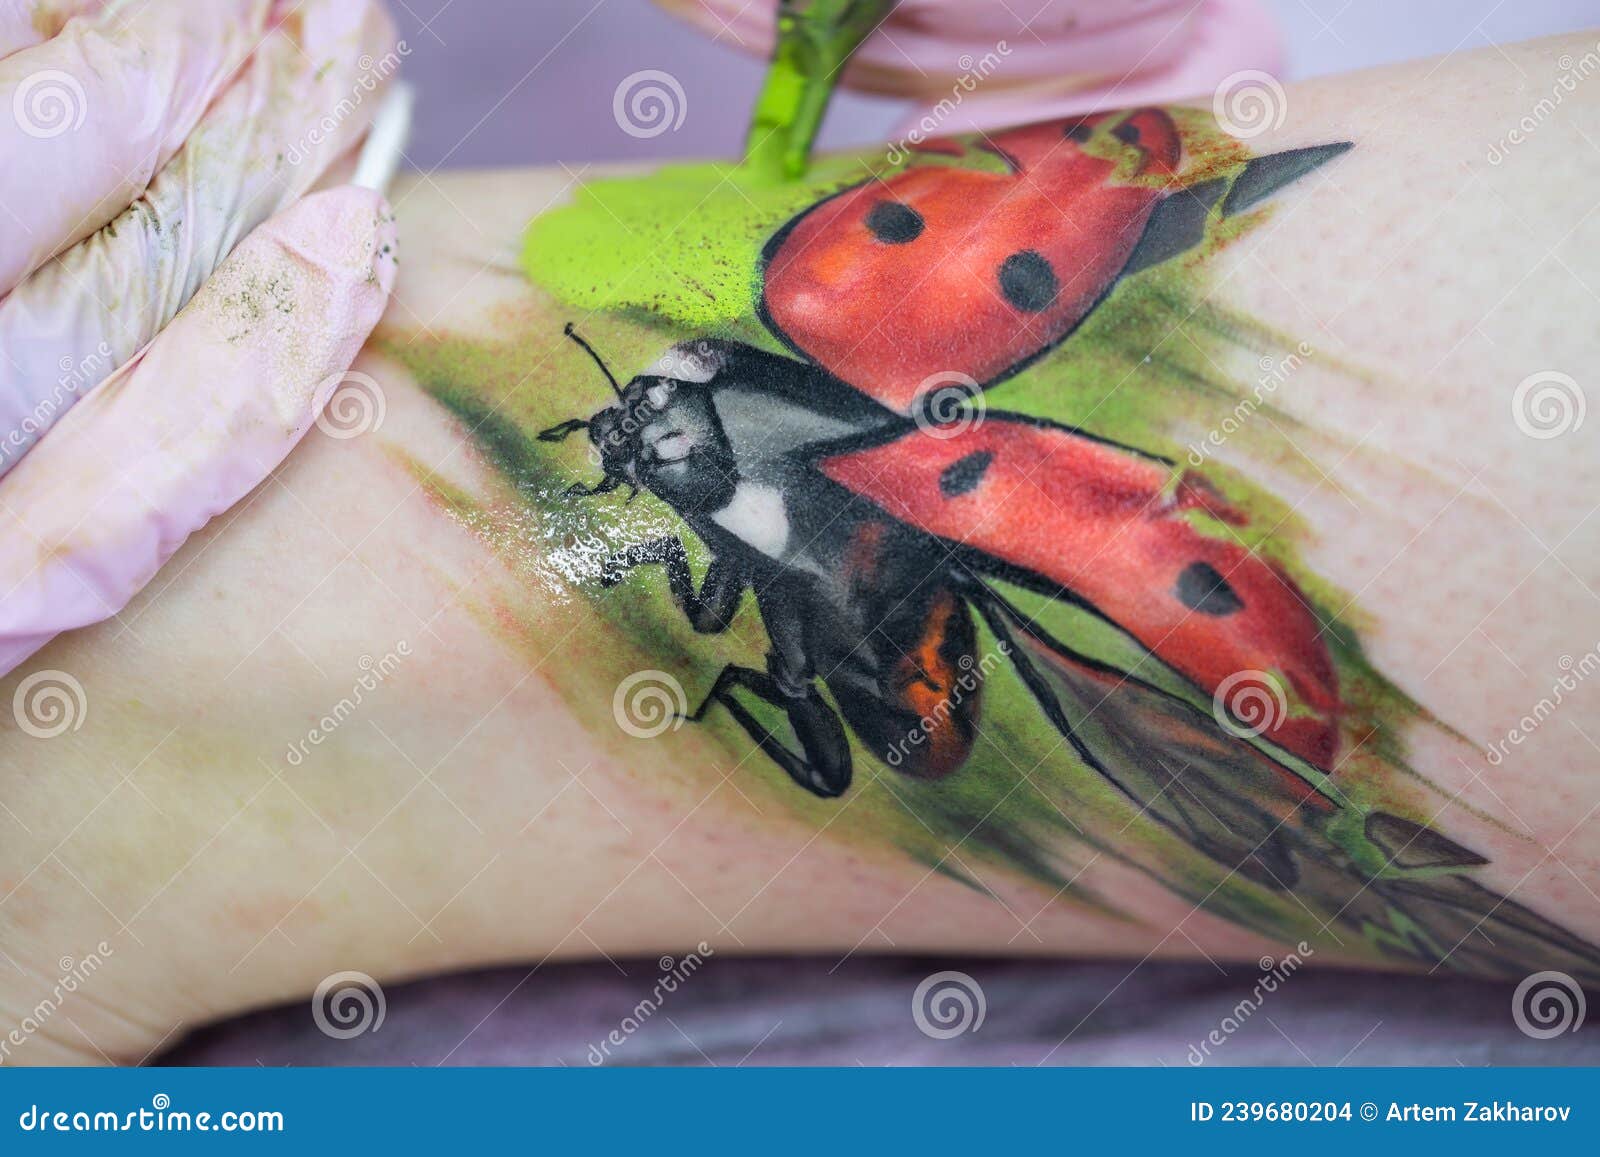 Premium Photo | Black and white ladybug tattoo on the upper back.